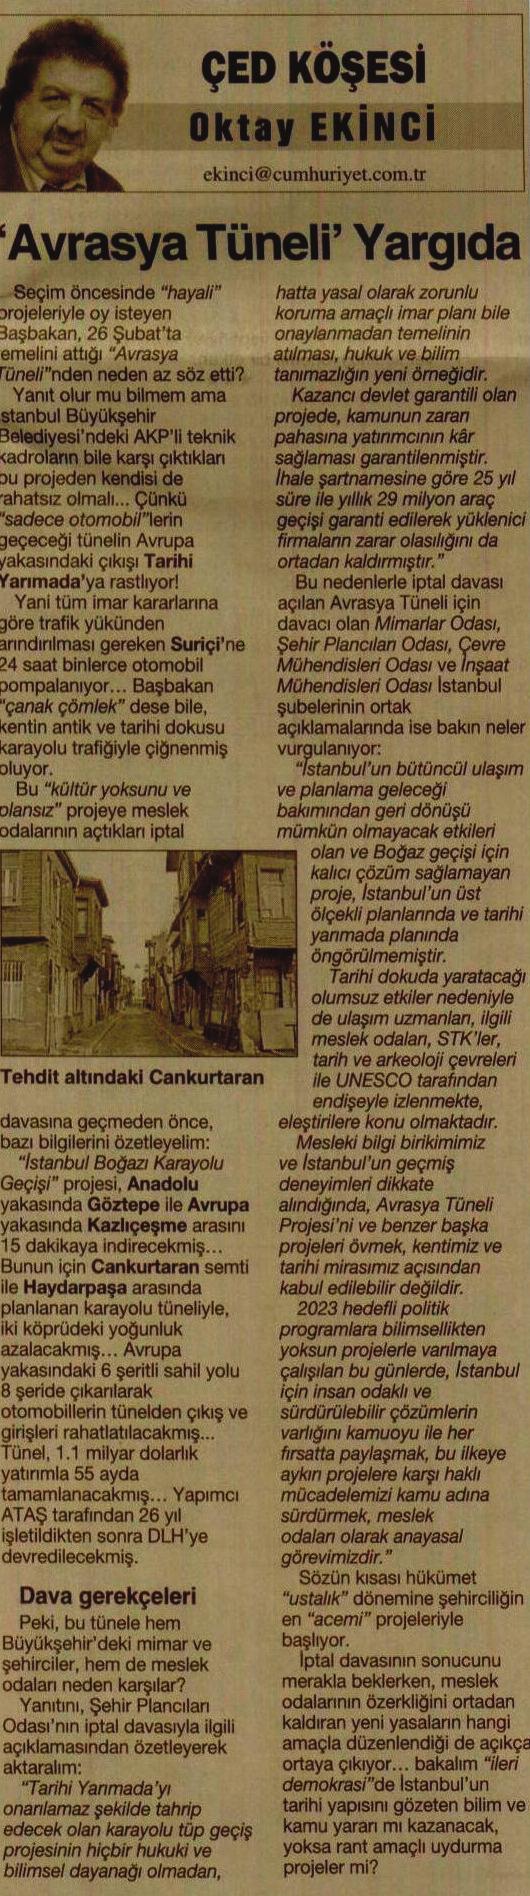 İMC TV 26 Ağustos 2011 İstanbul da kamu mülkiyetindeki açık alanların özelleştirilmek suretiyle yapılaşmaya açılmasını konu alan haber hakkında Odamız adına görüş veren Şube Sekreterimiz Akif Burak